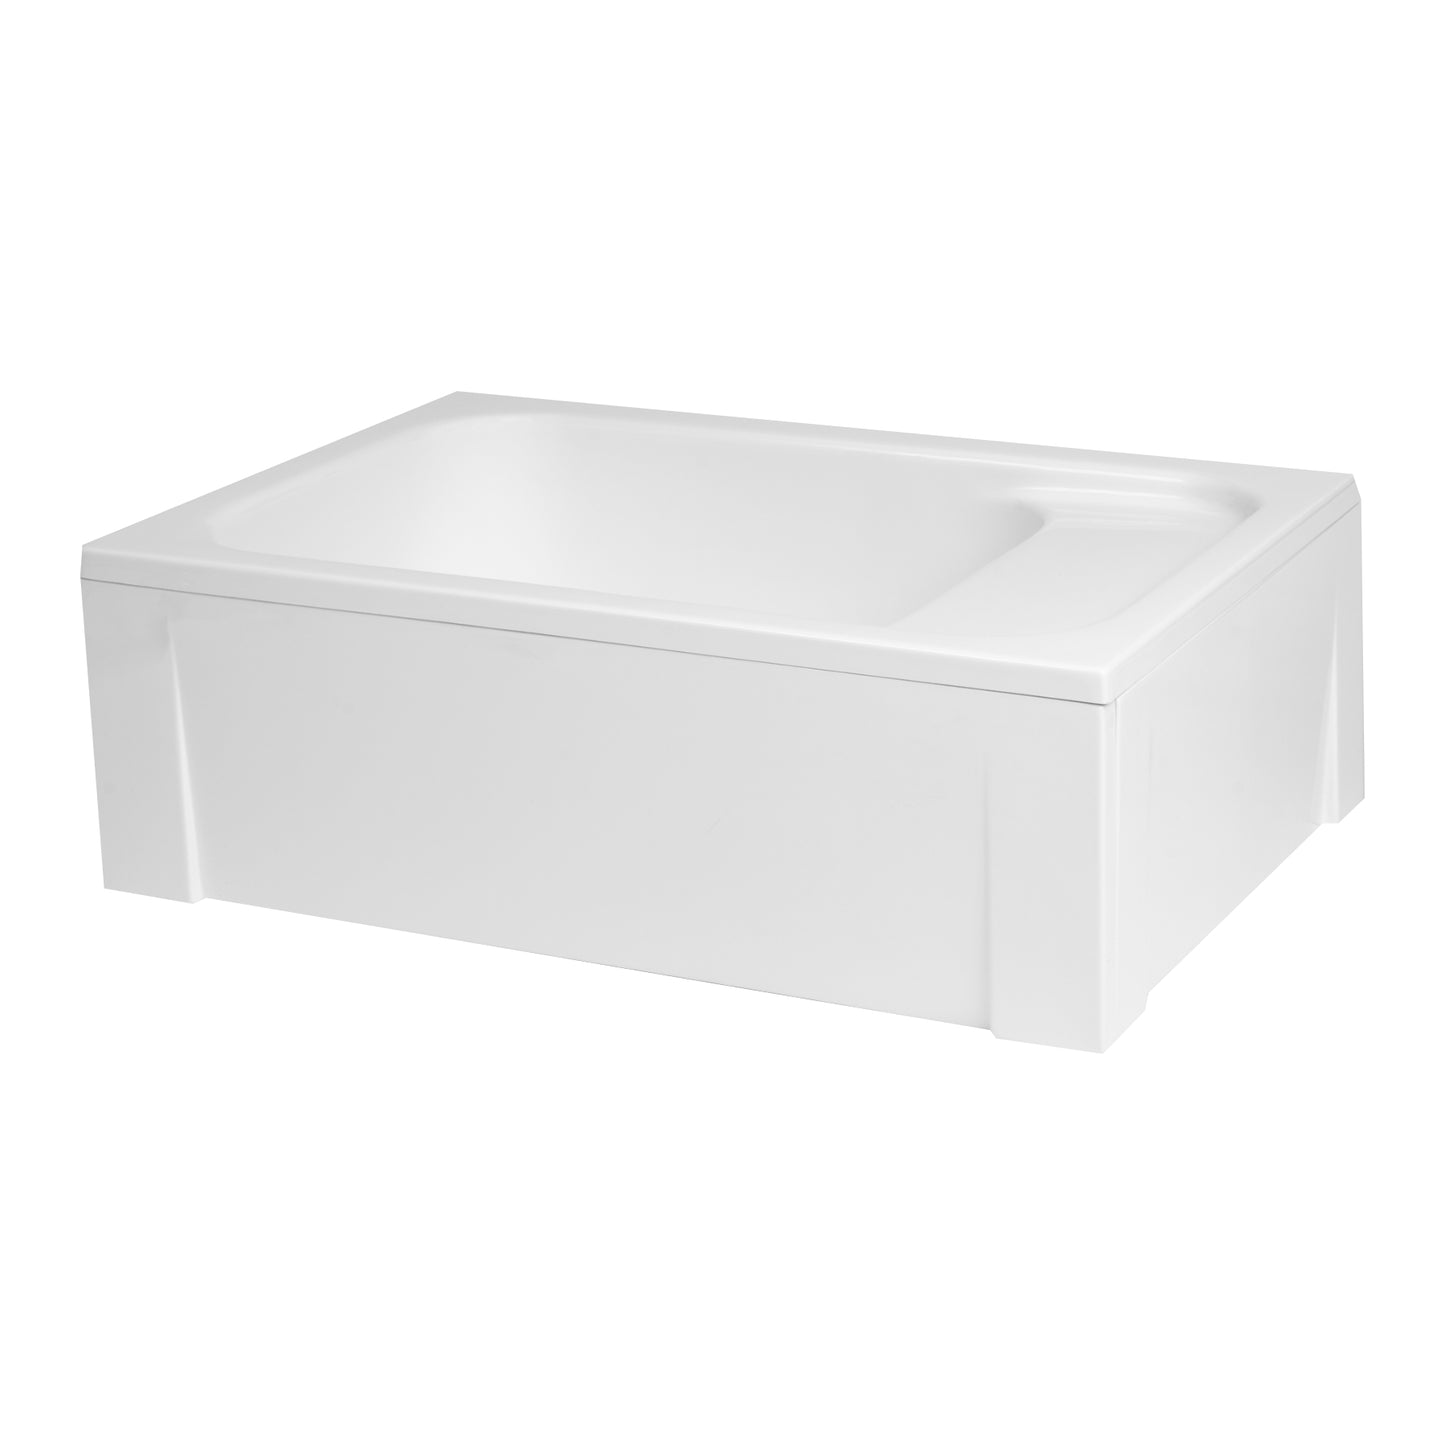 Acrylic rectangular shower base with seat RONI